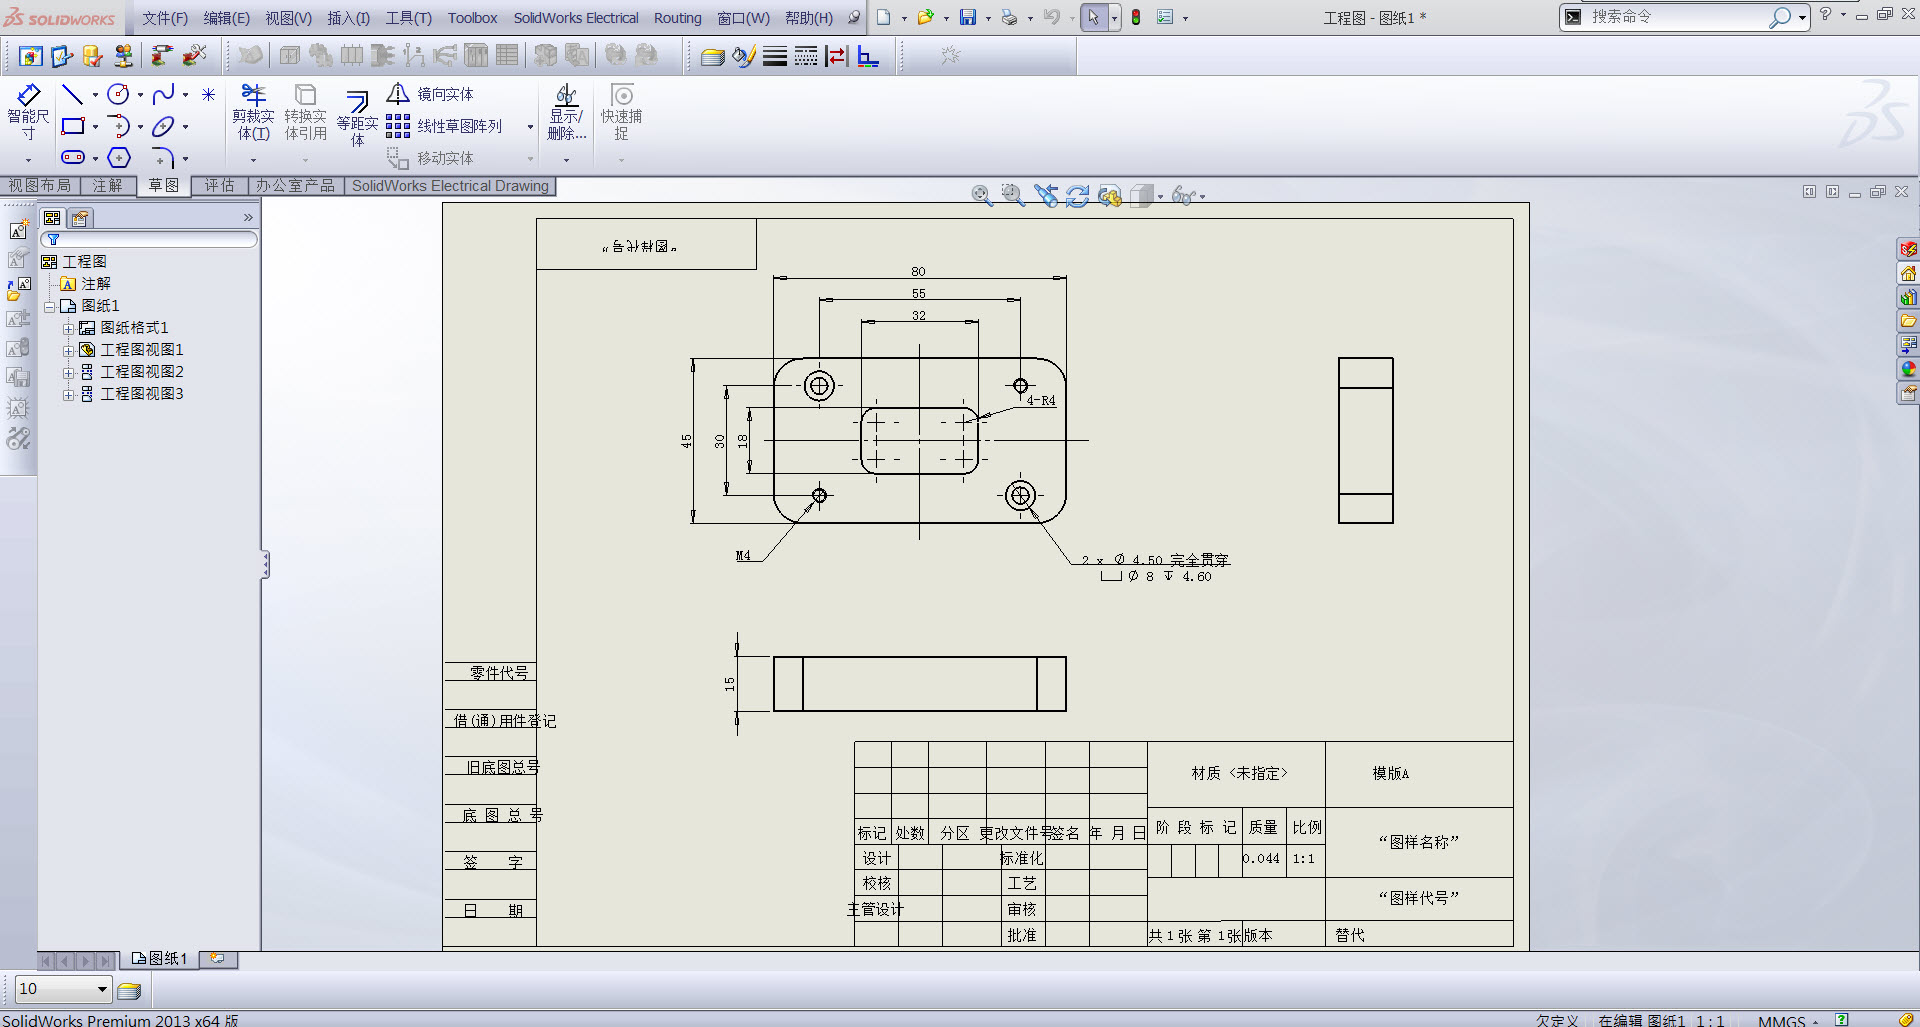 CAD图纸怎么设置别人不能修改 - AutoCAD问题库 - 土木工程网